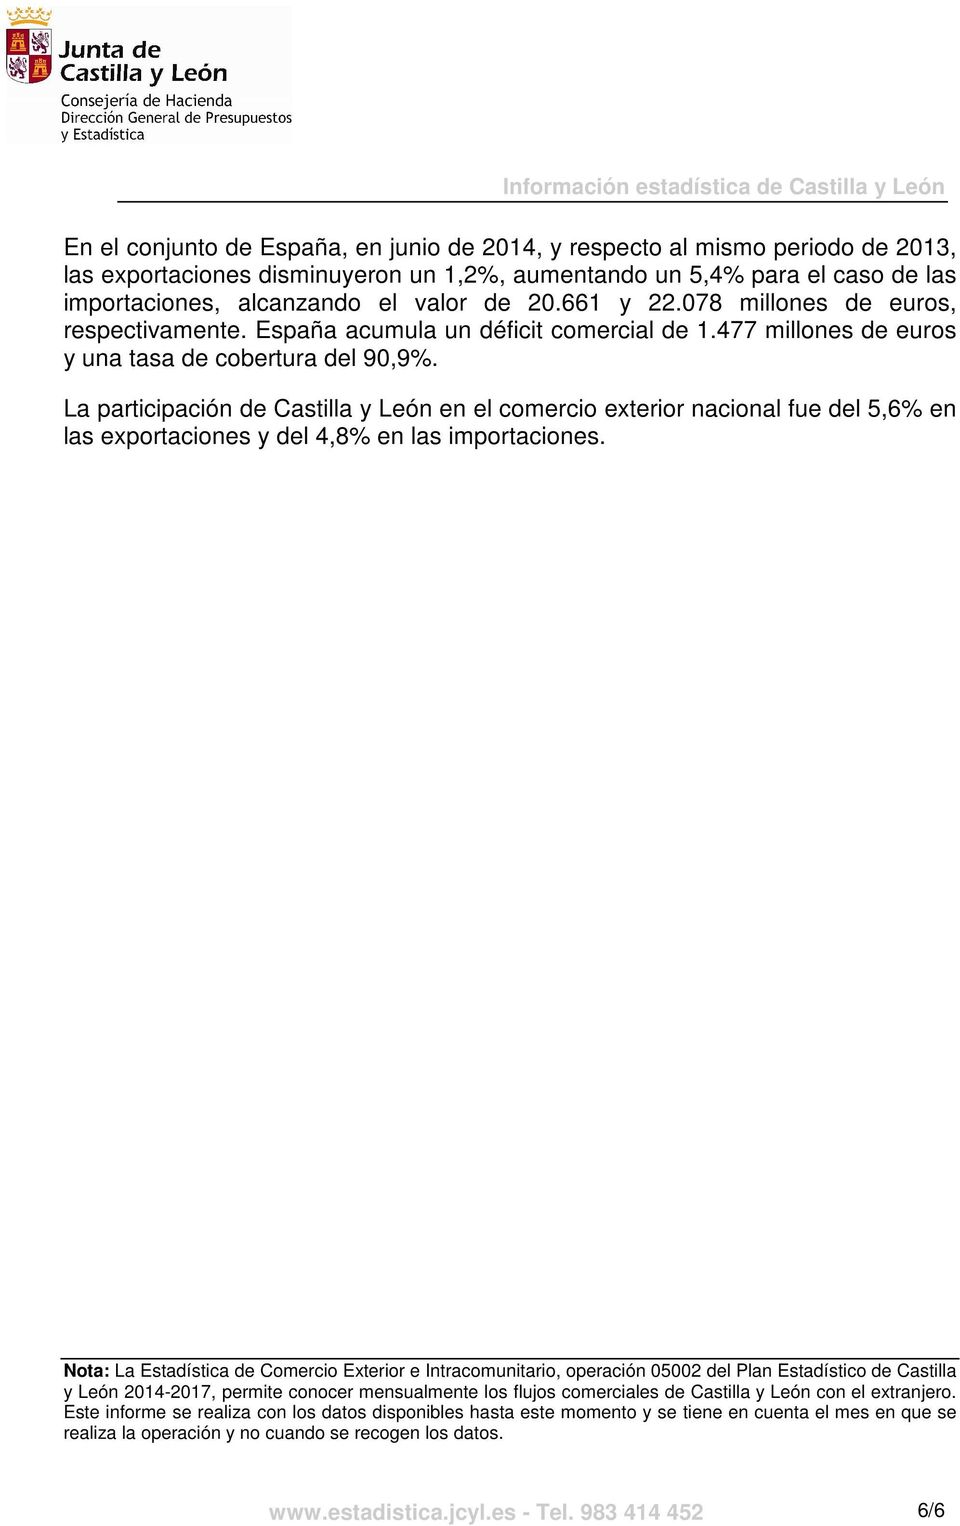 La participación de Castilla y León en el comercio exterior nacional fue del 5,6% en las exportaciones y del 4,8% en las importaciones.